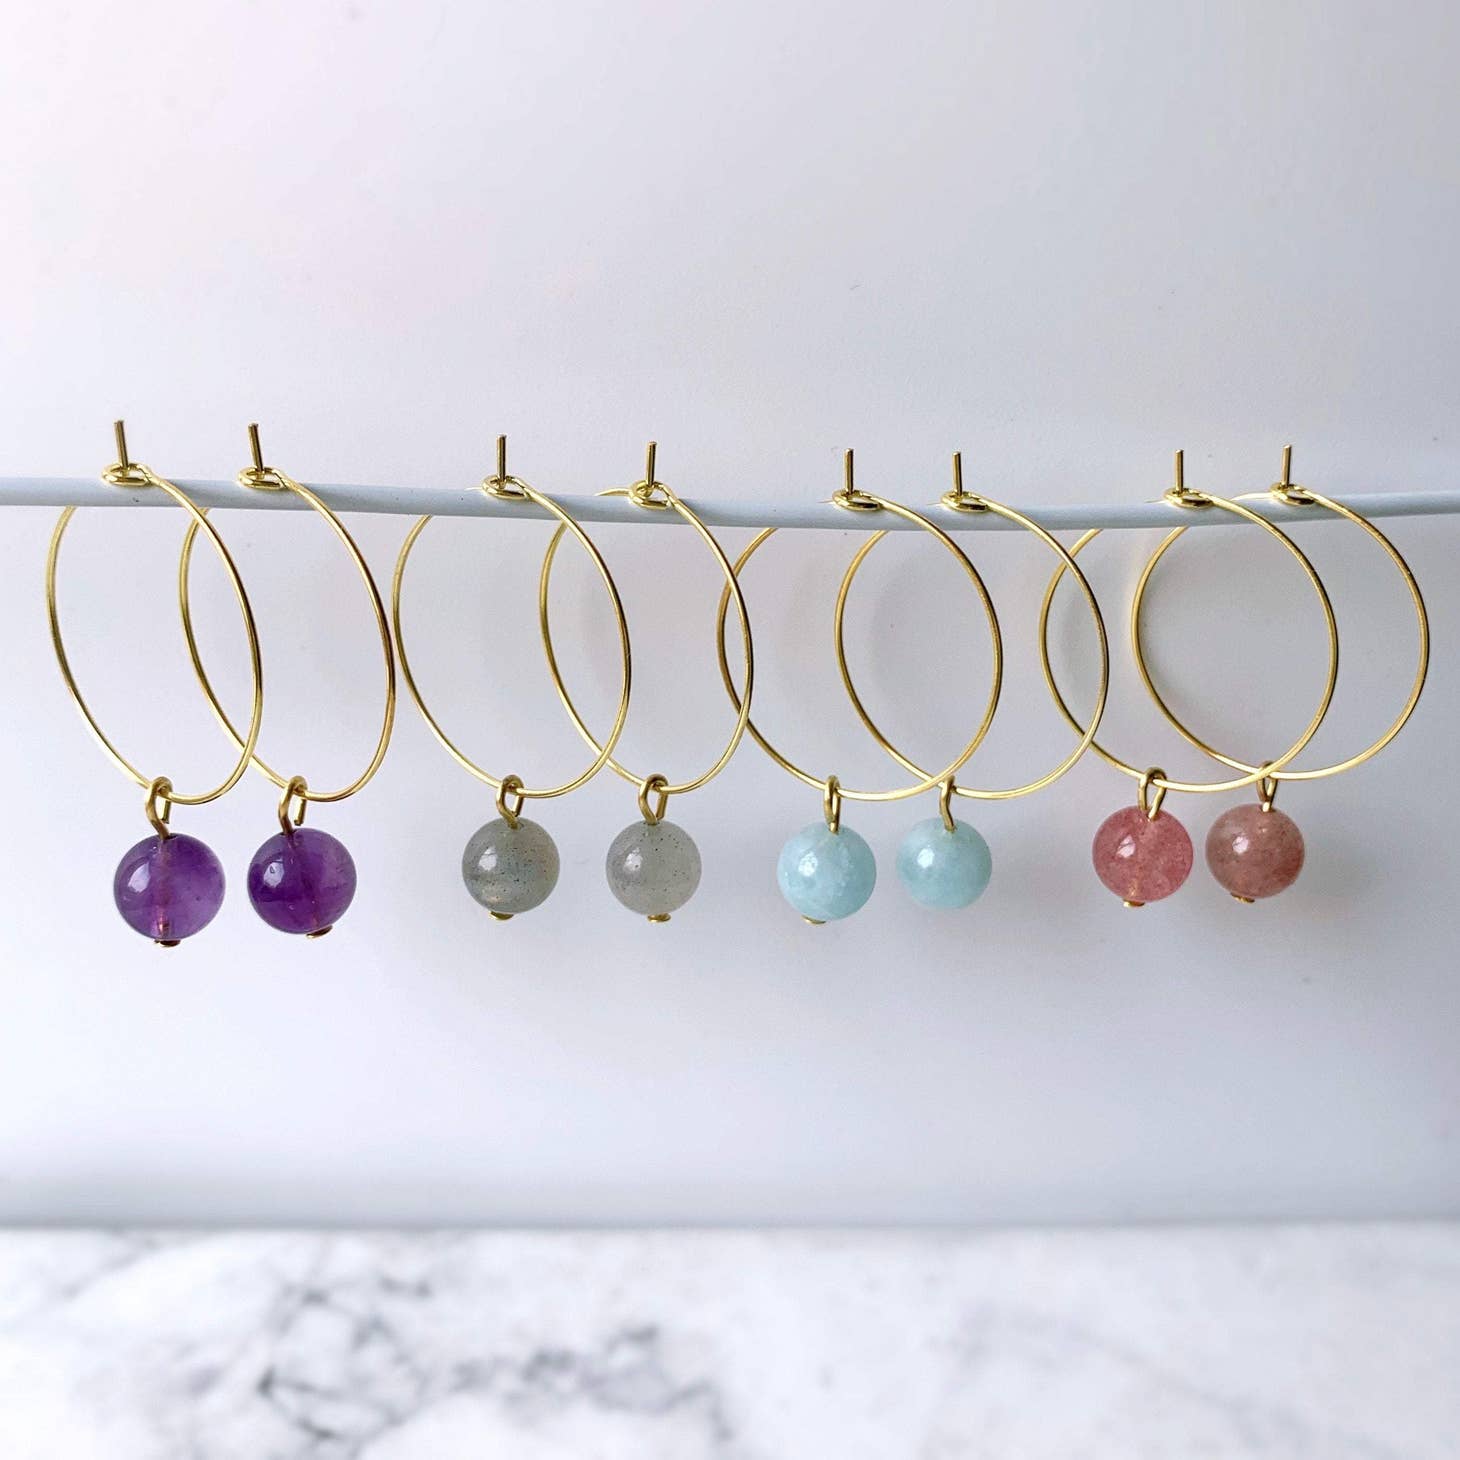 Gemstone Beads Hoop Earrings - Amethyst-Earrings-NEVANNA